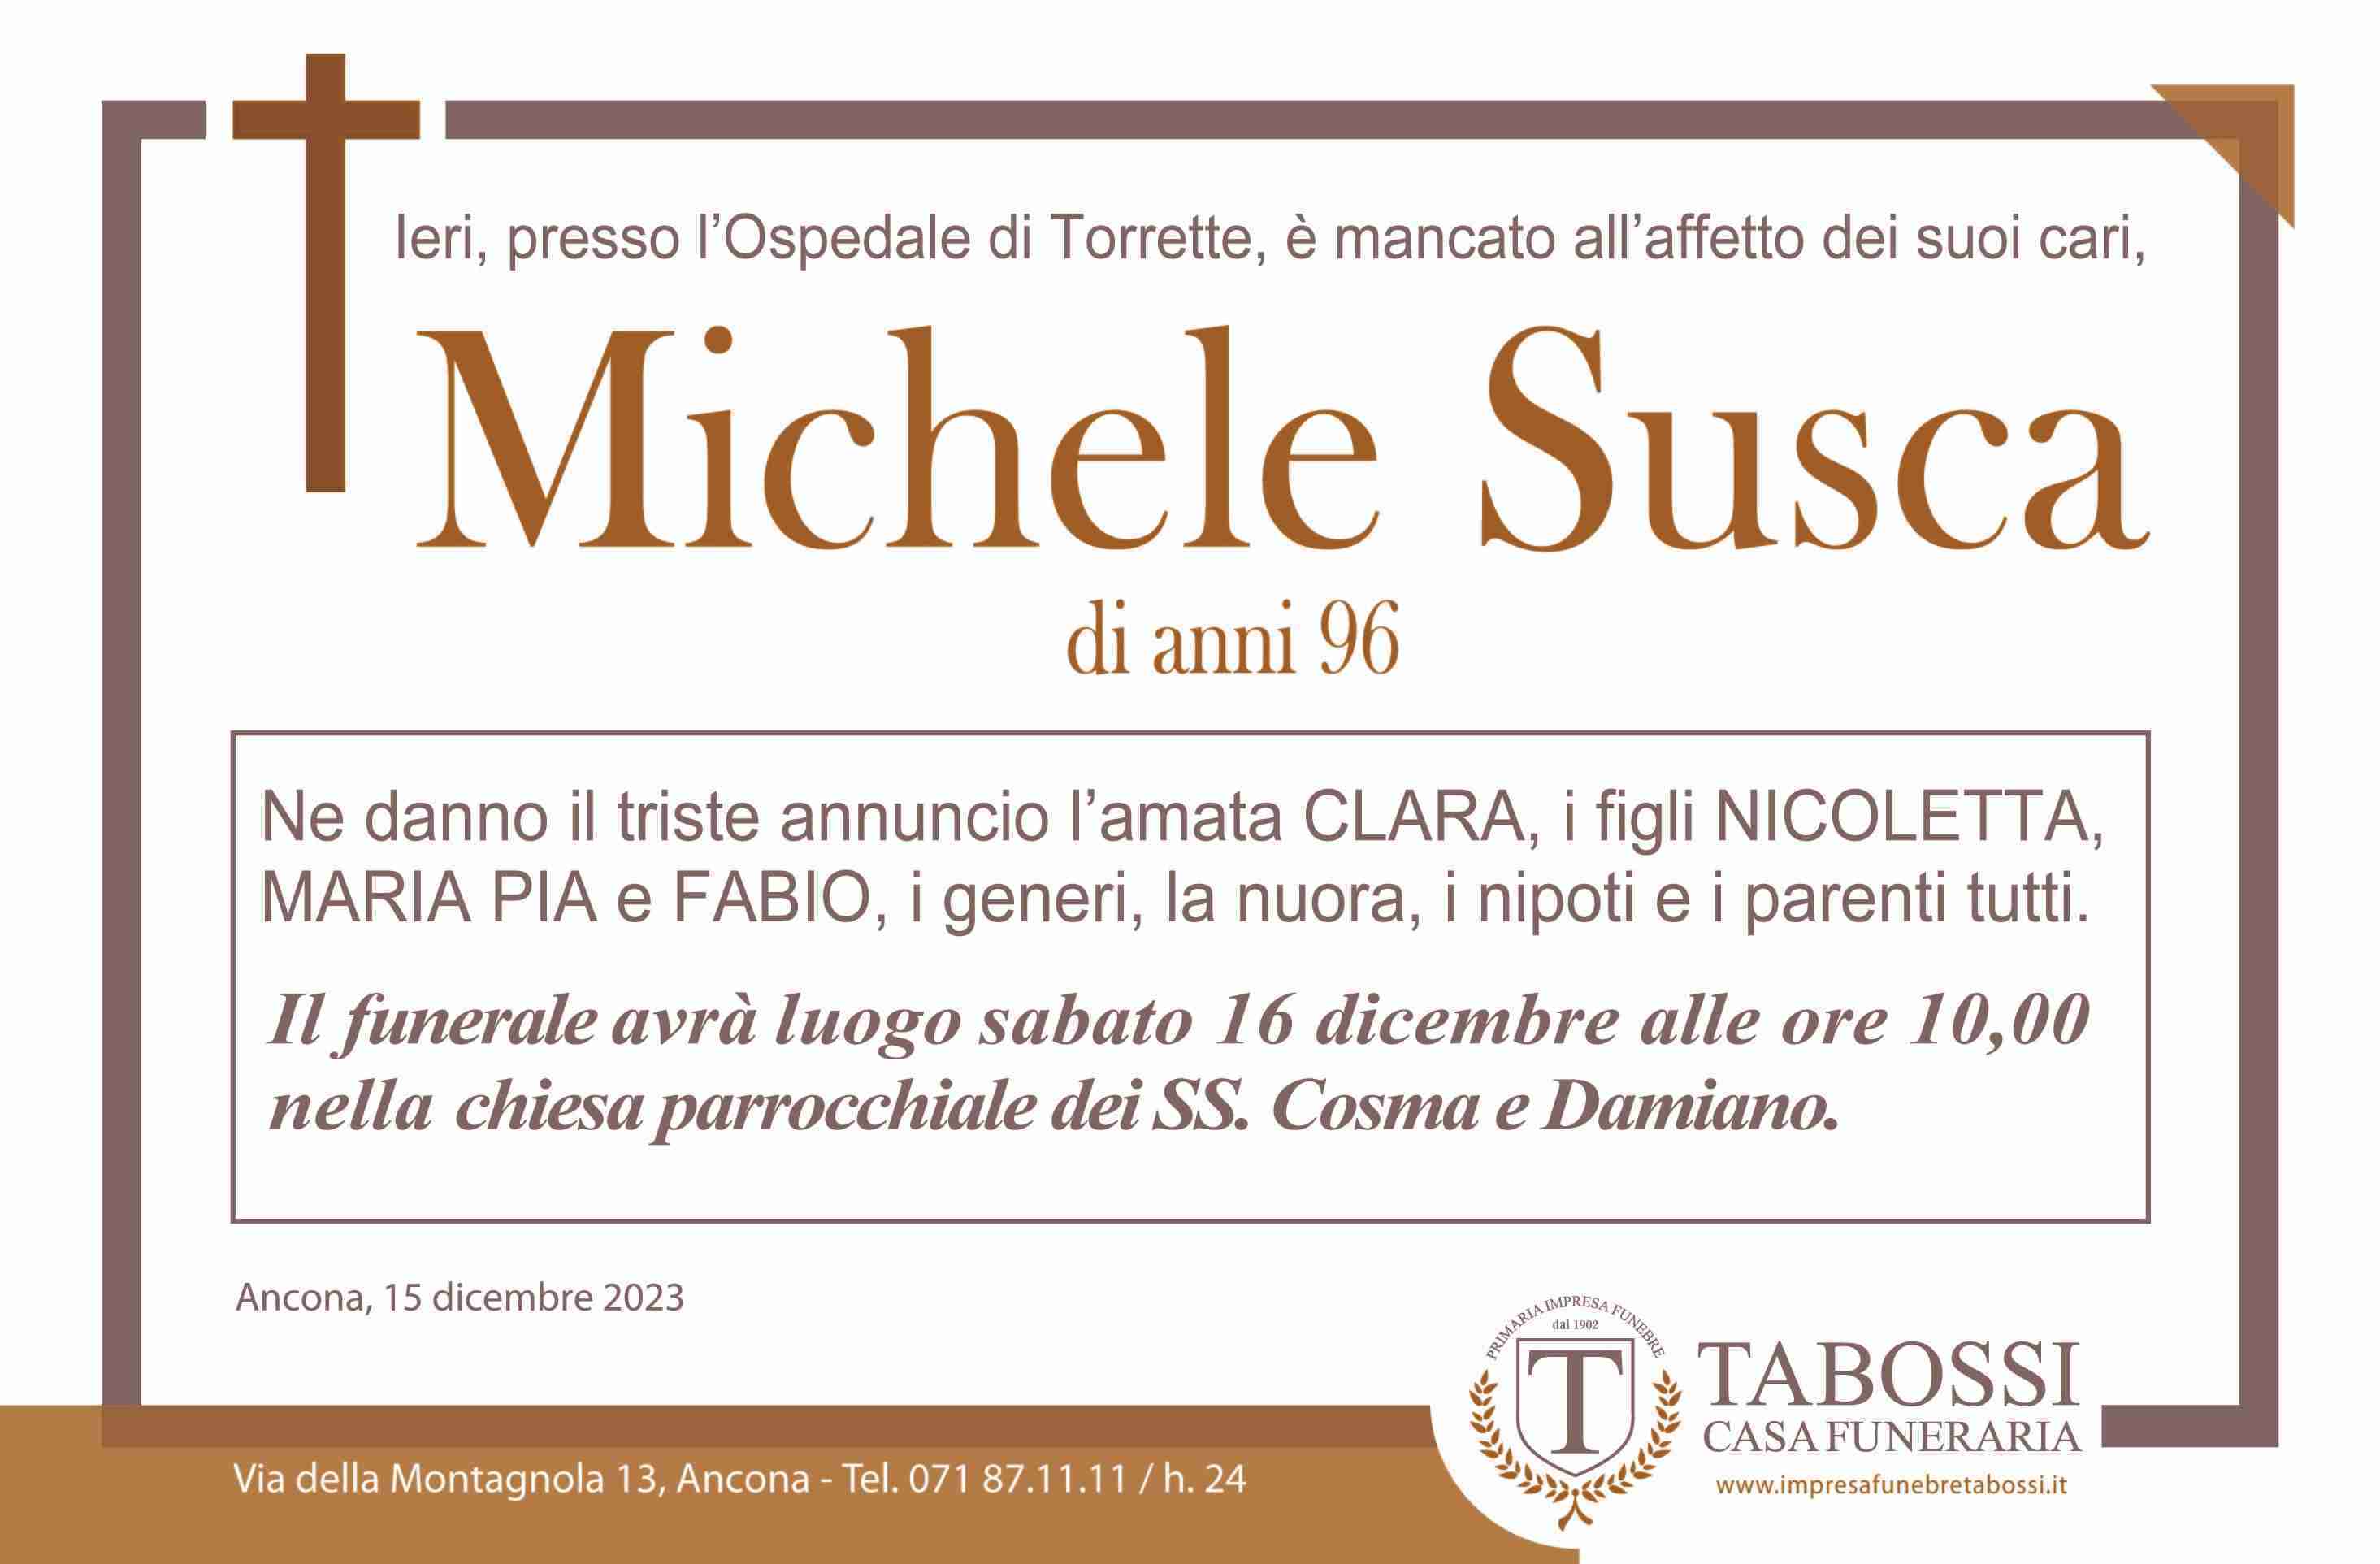 Michele Susca